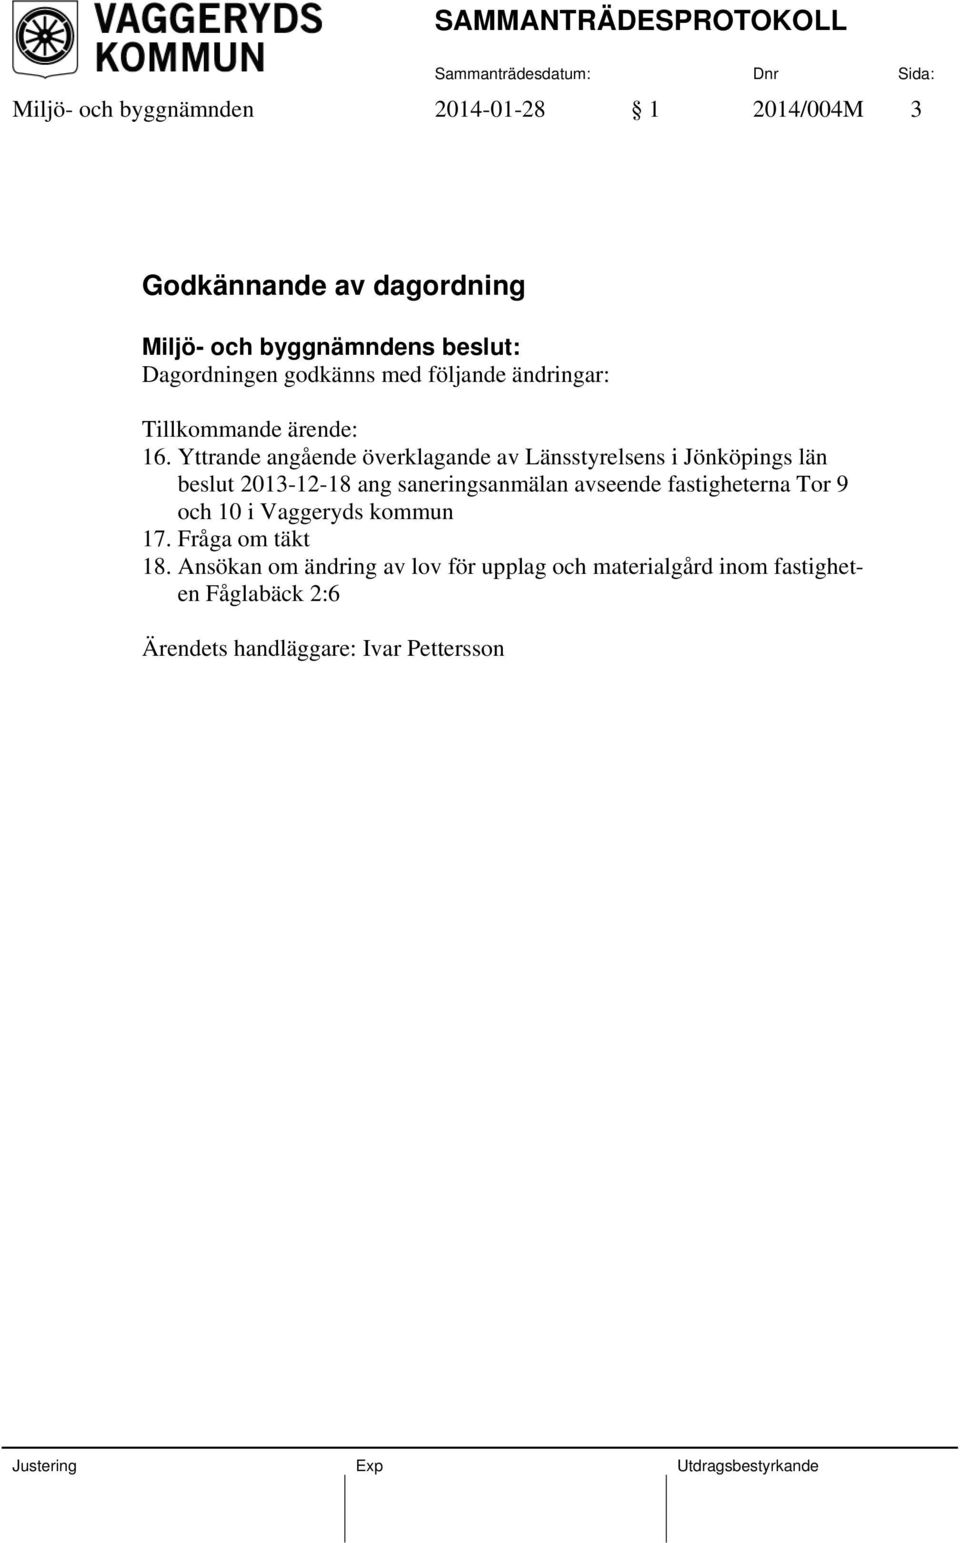 Yttrande angående överklagande av Länsstyrelsens i Jönköpings län beslut 2013-12-18 ang saneringsanmälan